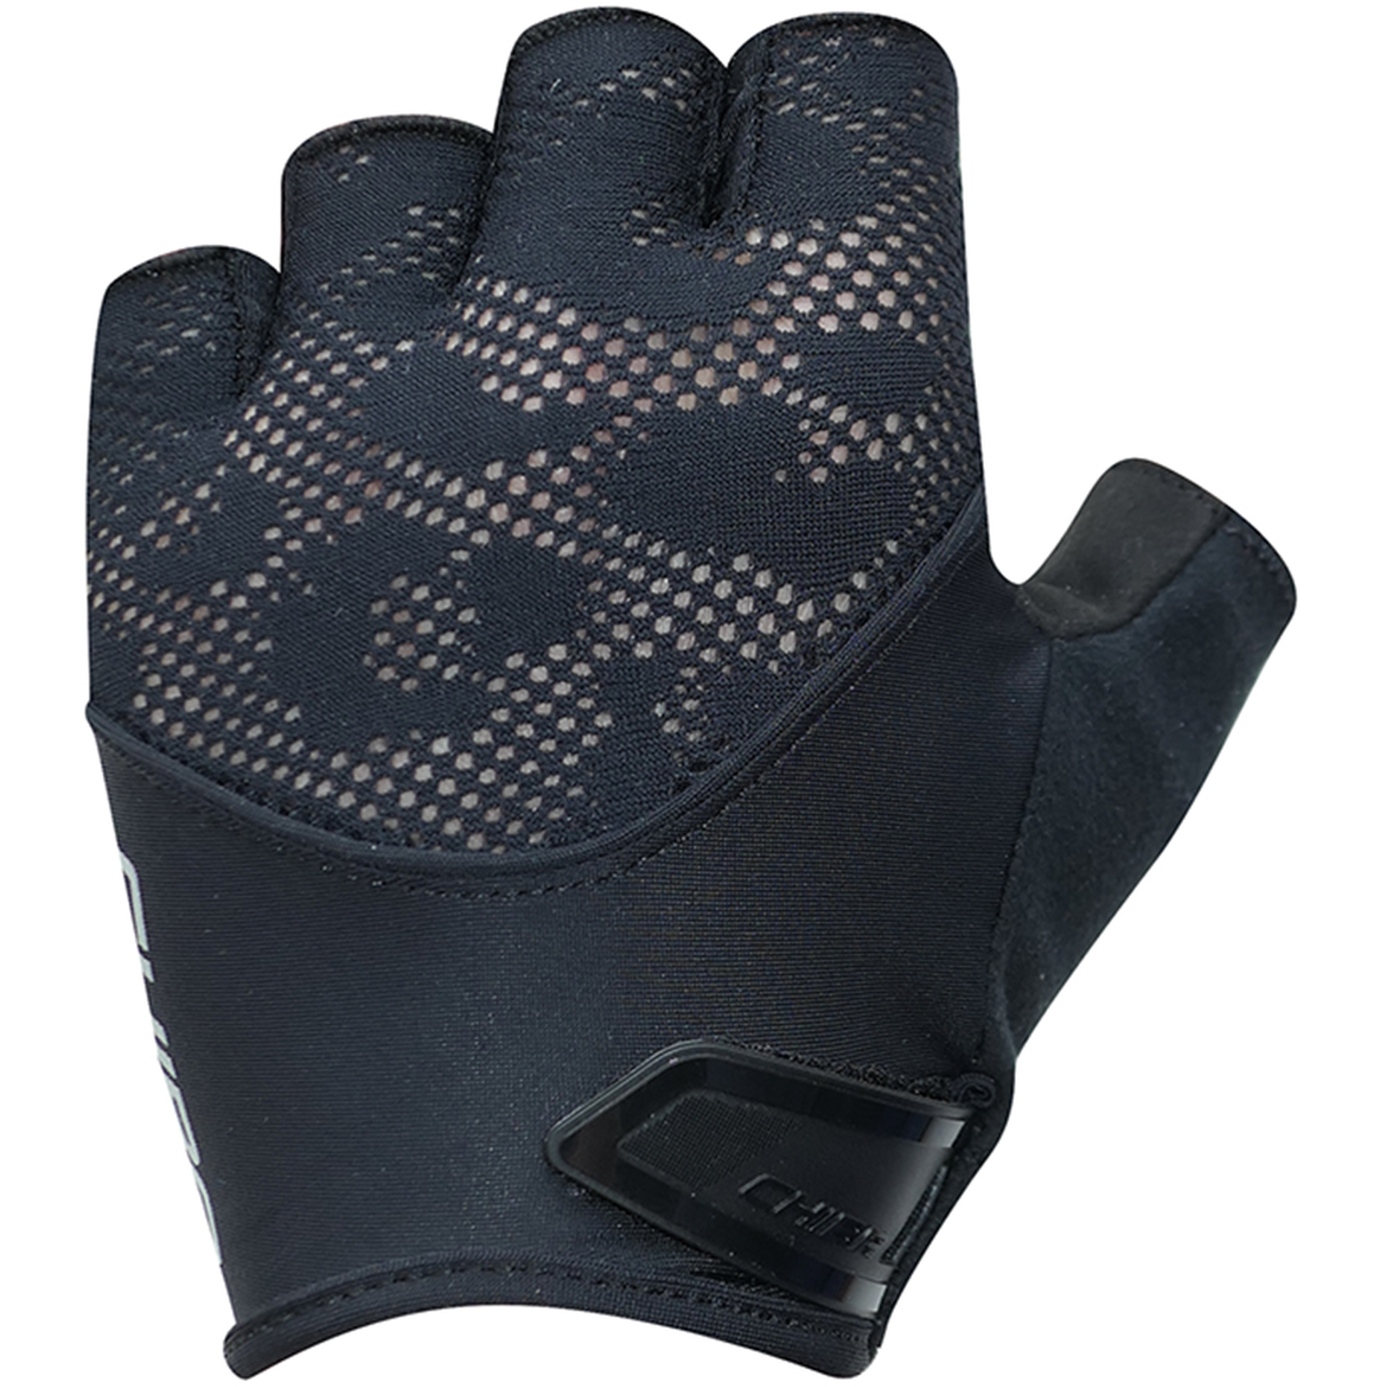 Produktbild von Chiba Gel Kurzfinger-Handschuhe Damen - schwarz/schwarz